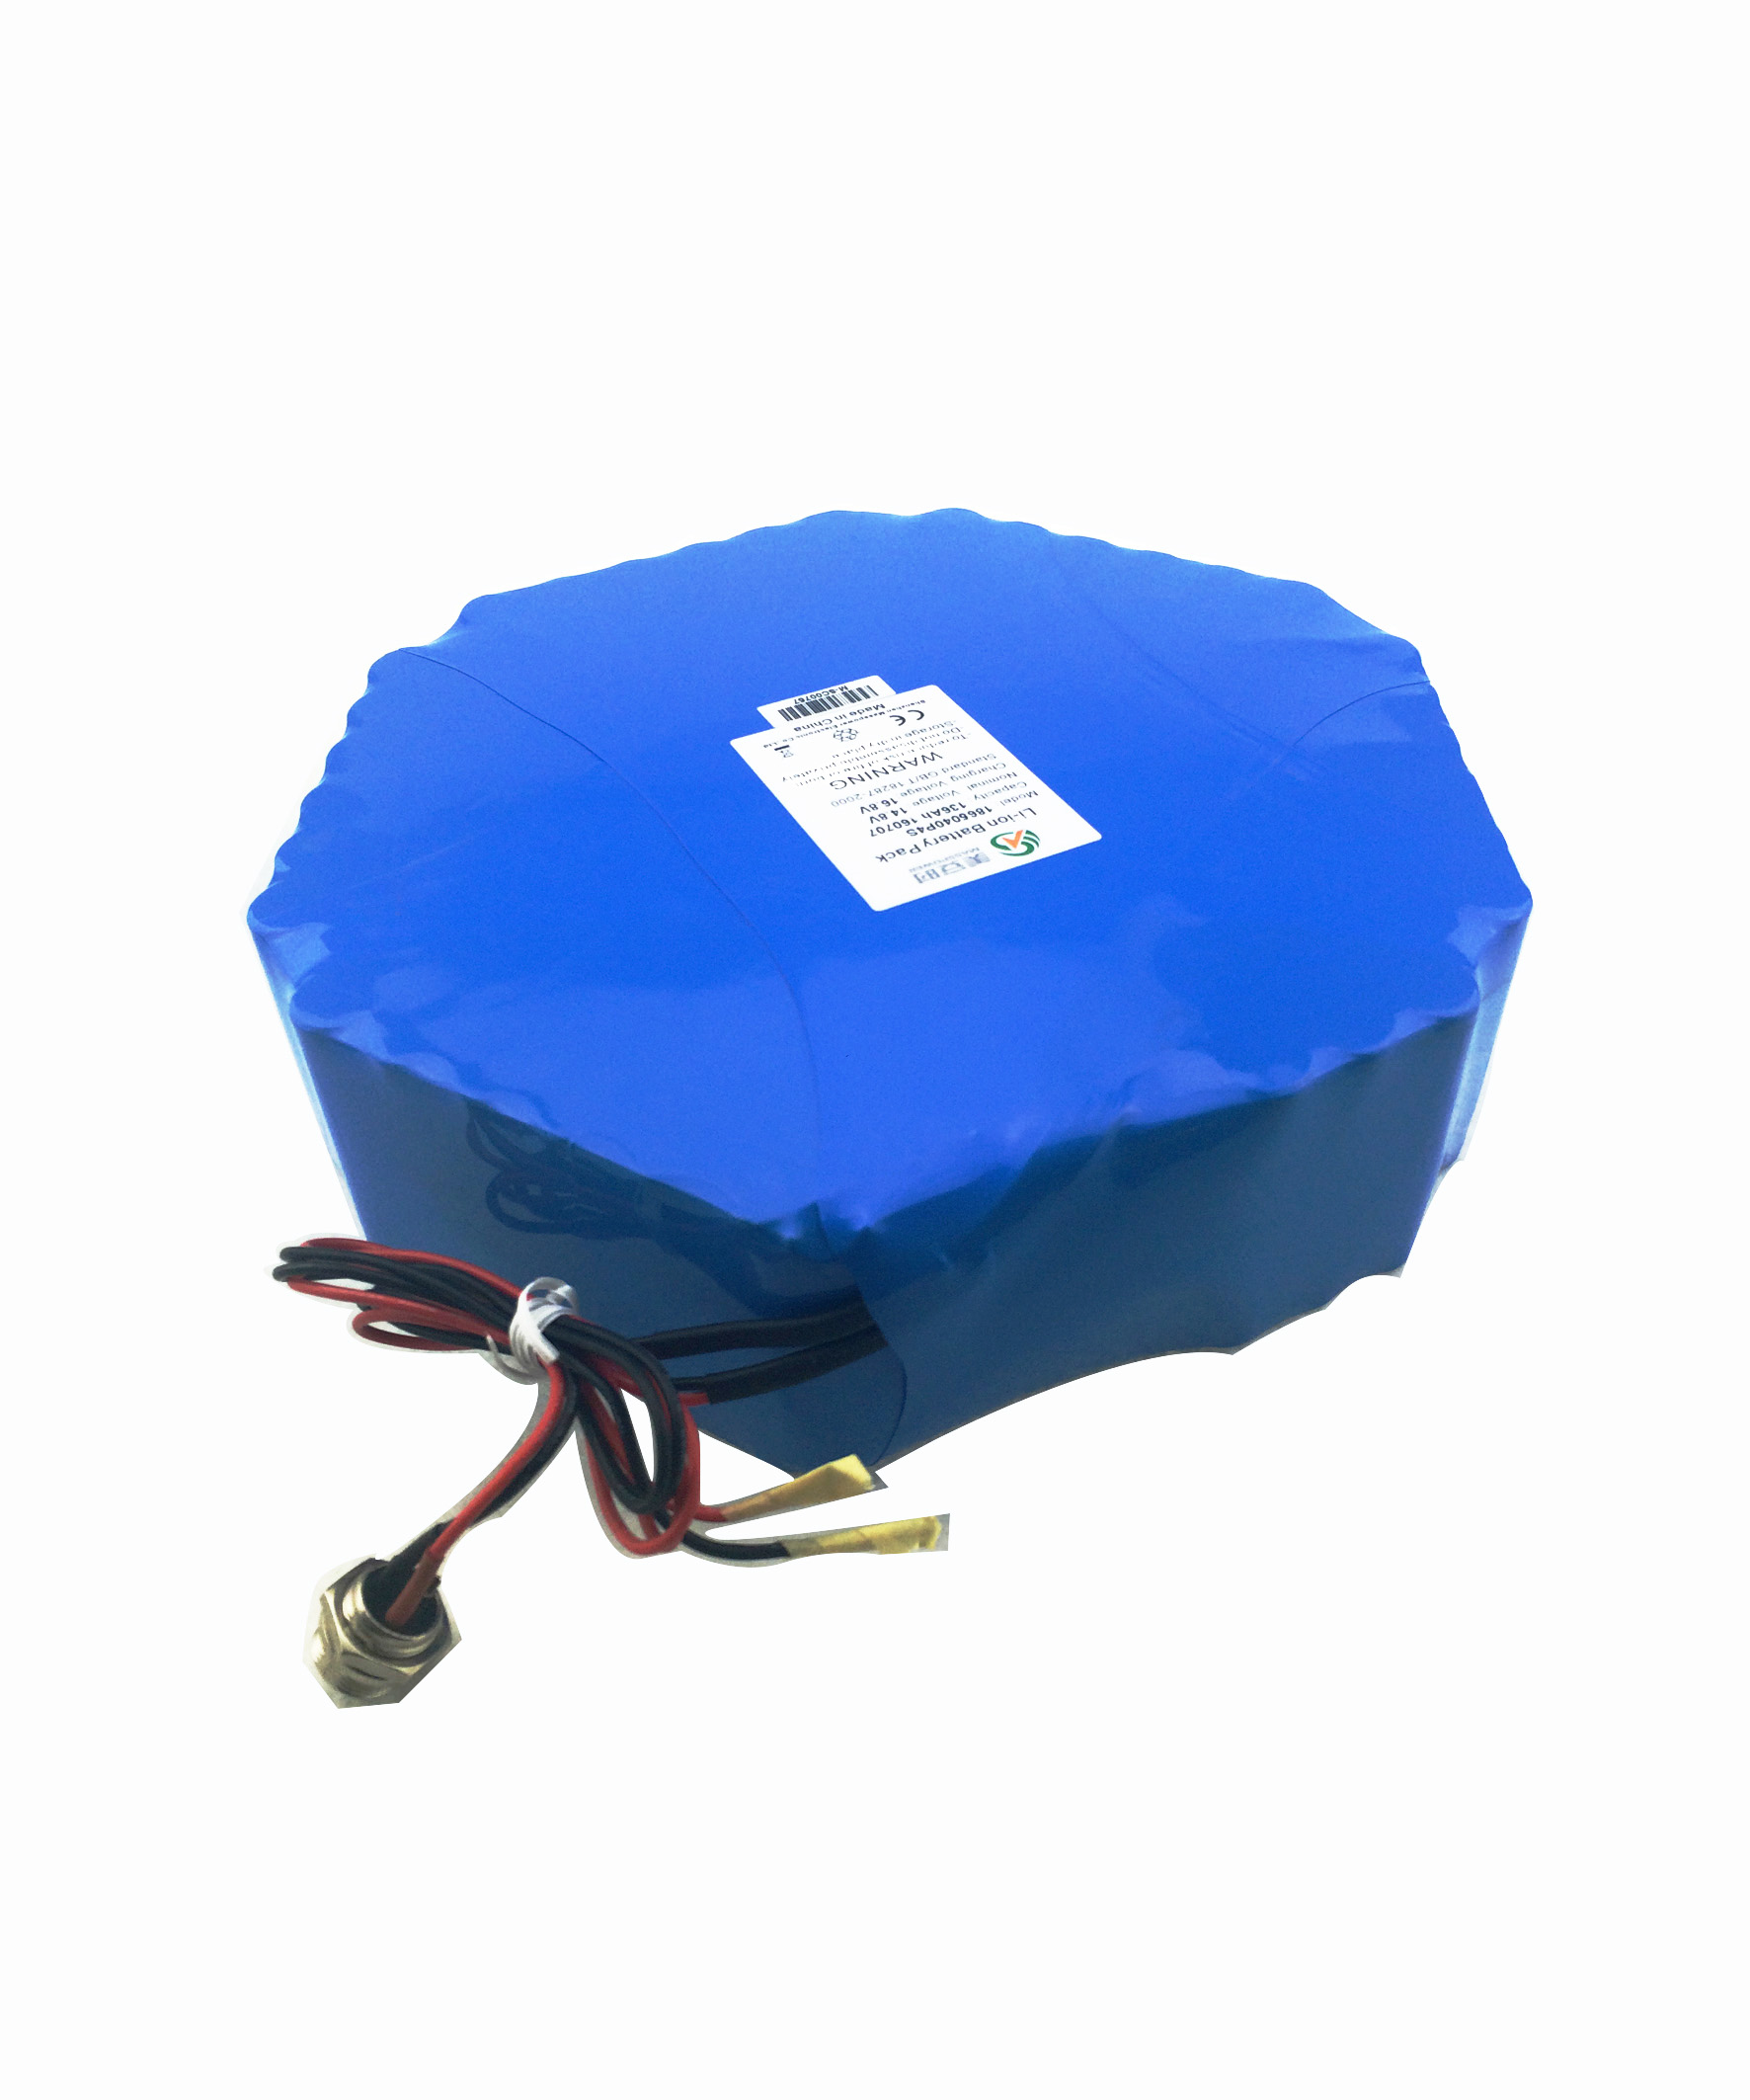 14.8V锂电池组丨海洋地震勘测仪